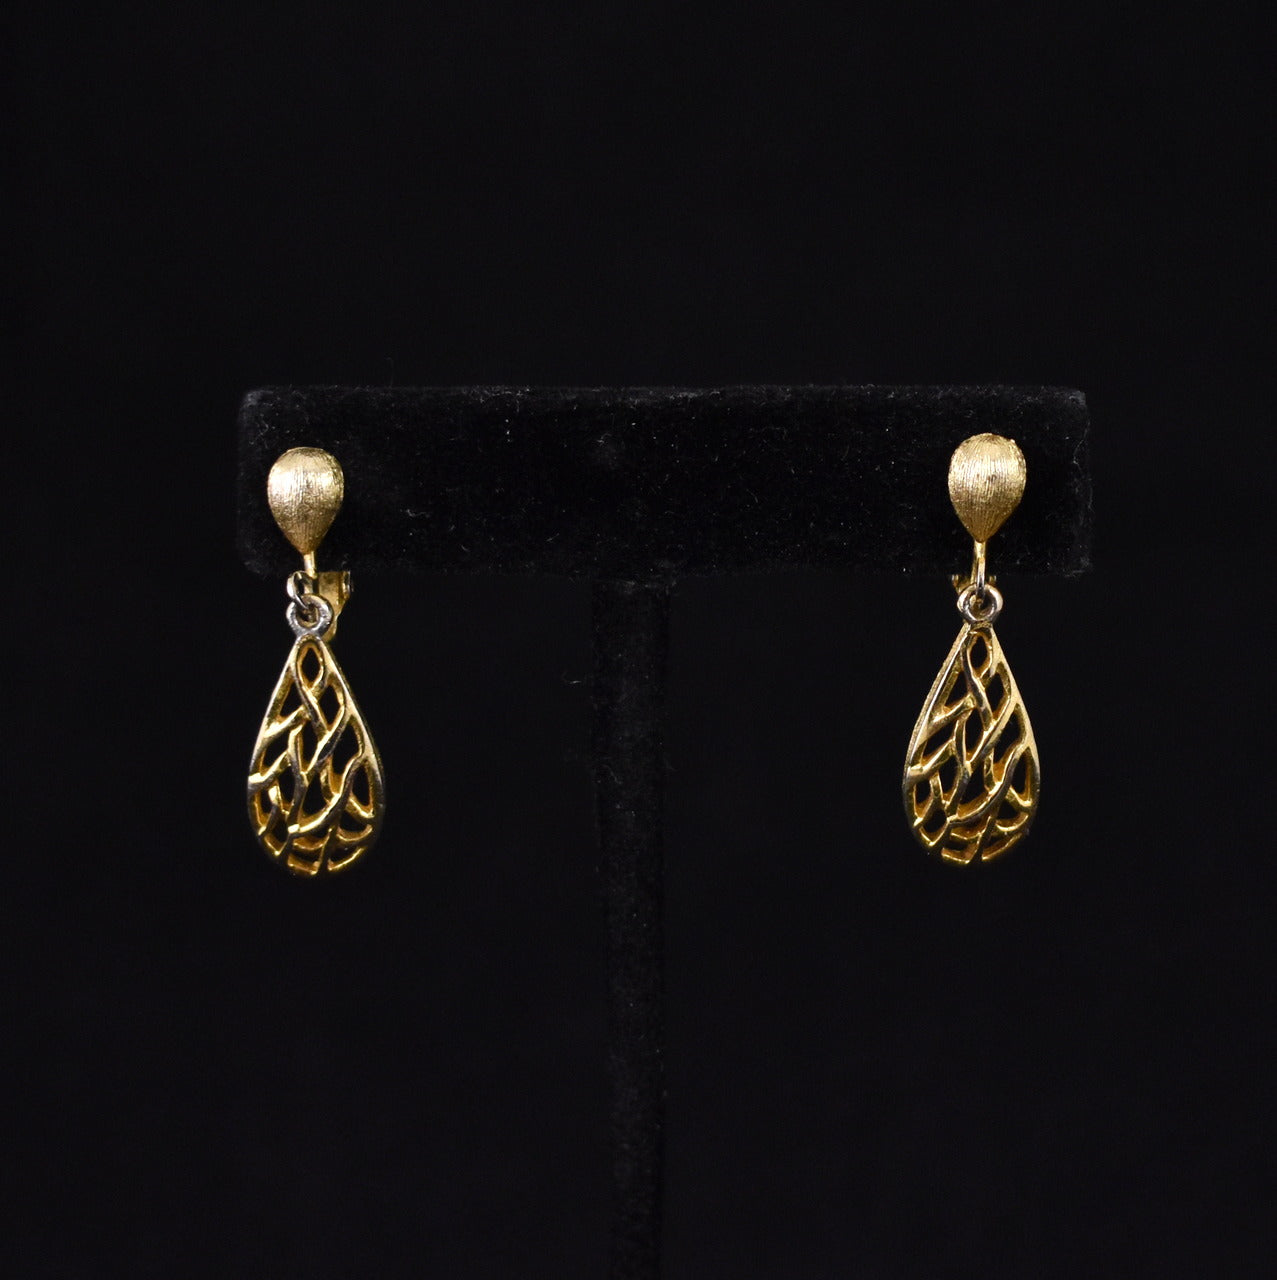 Goldtone Dangling Open Drop Earrings